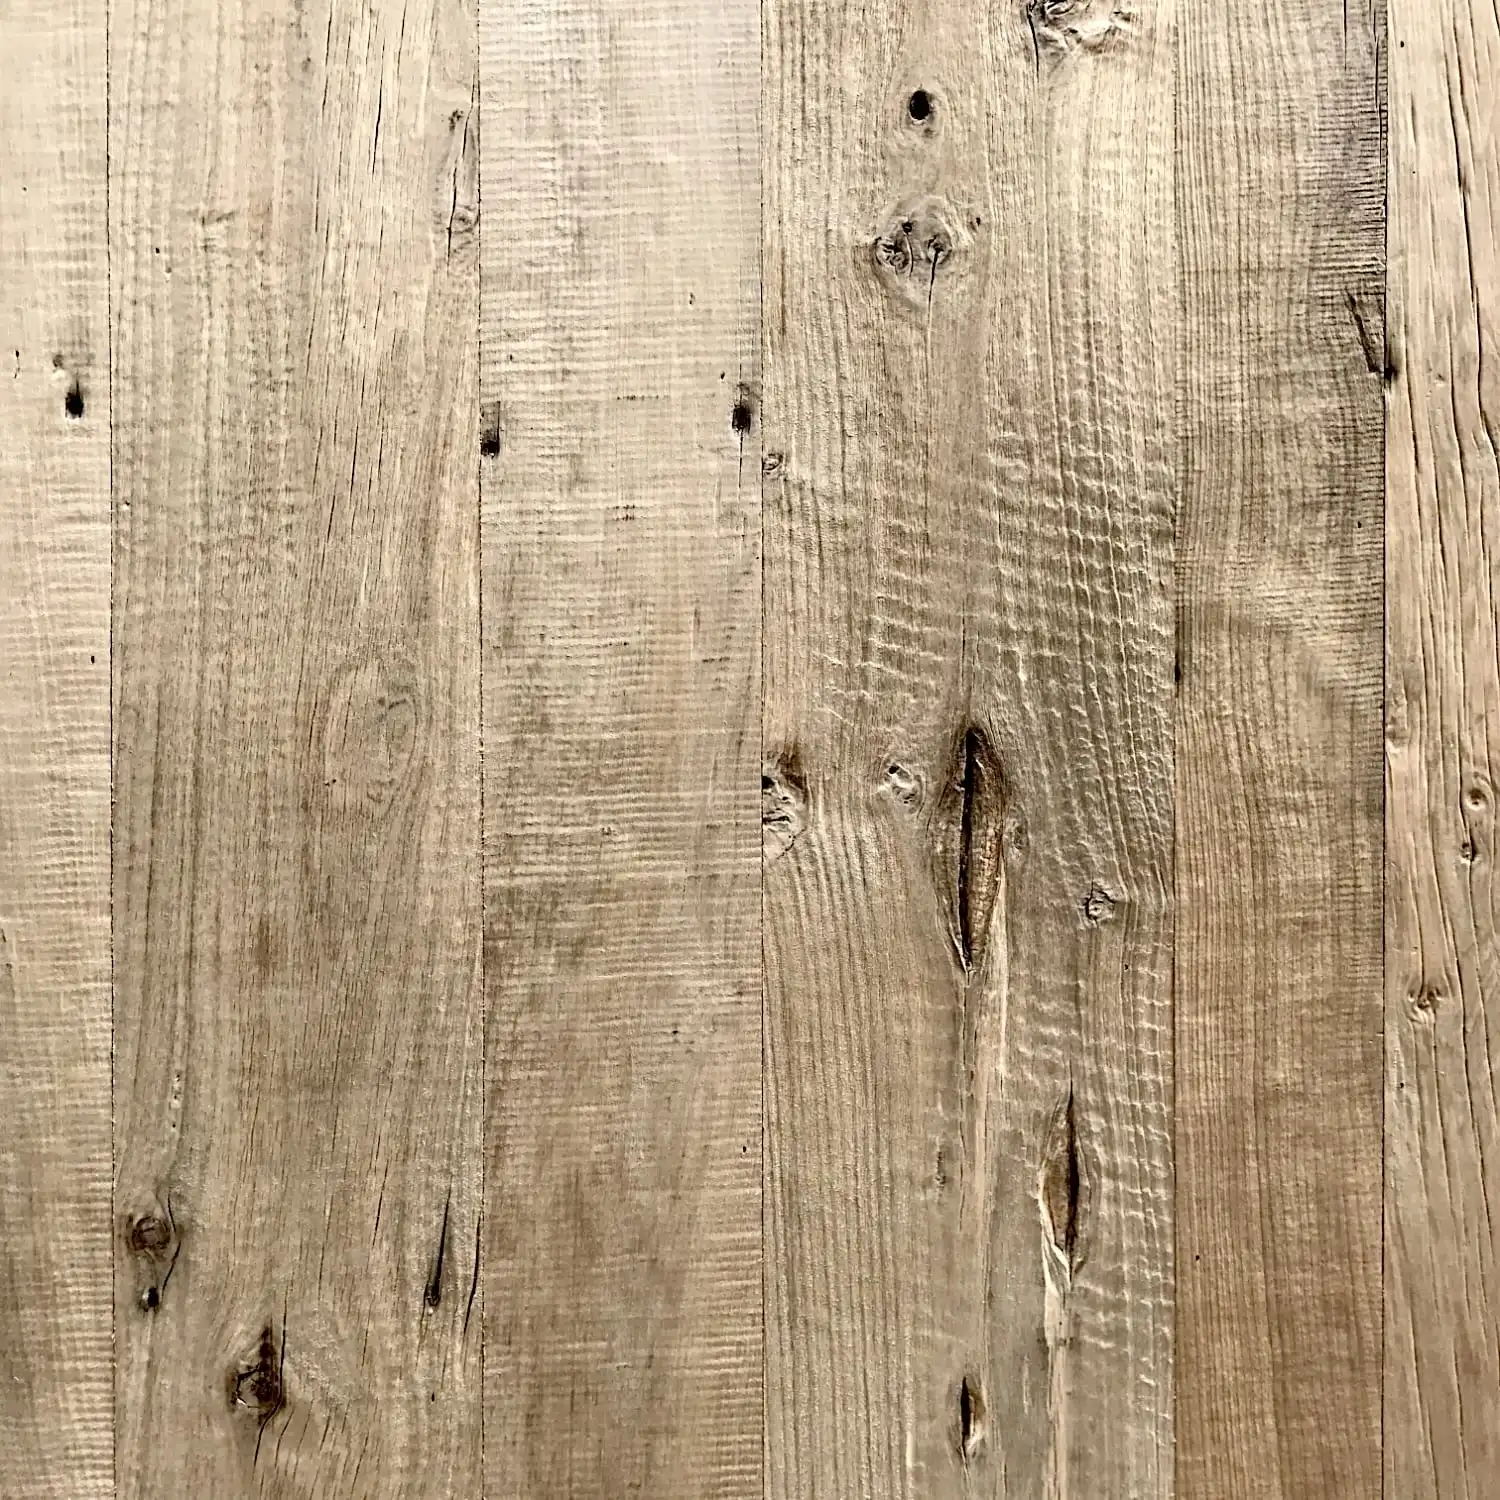  Gros plan d'une surface en bois avec grain visible, nœuds et légères rayures sur des panneaux vieux bois. 